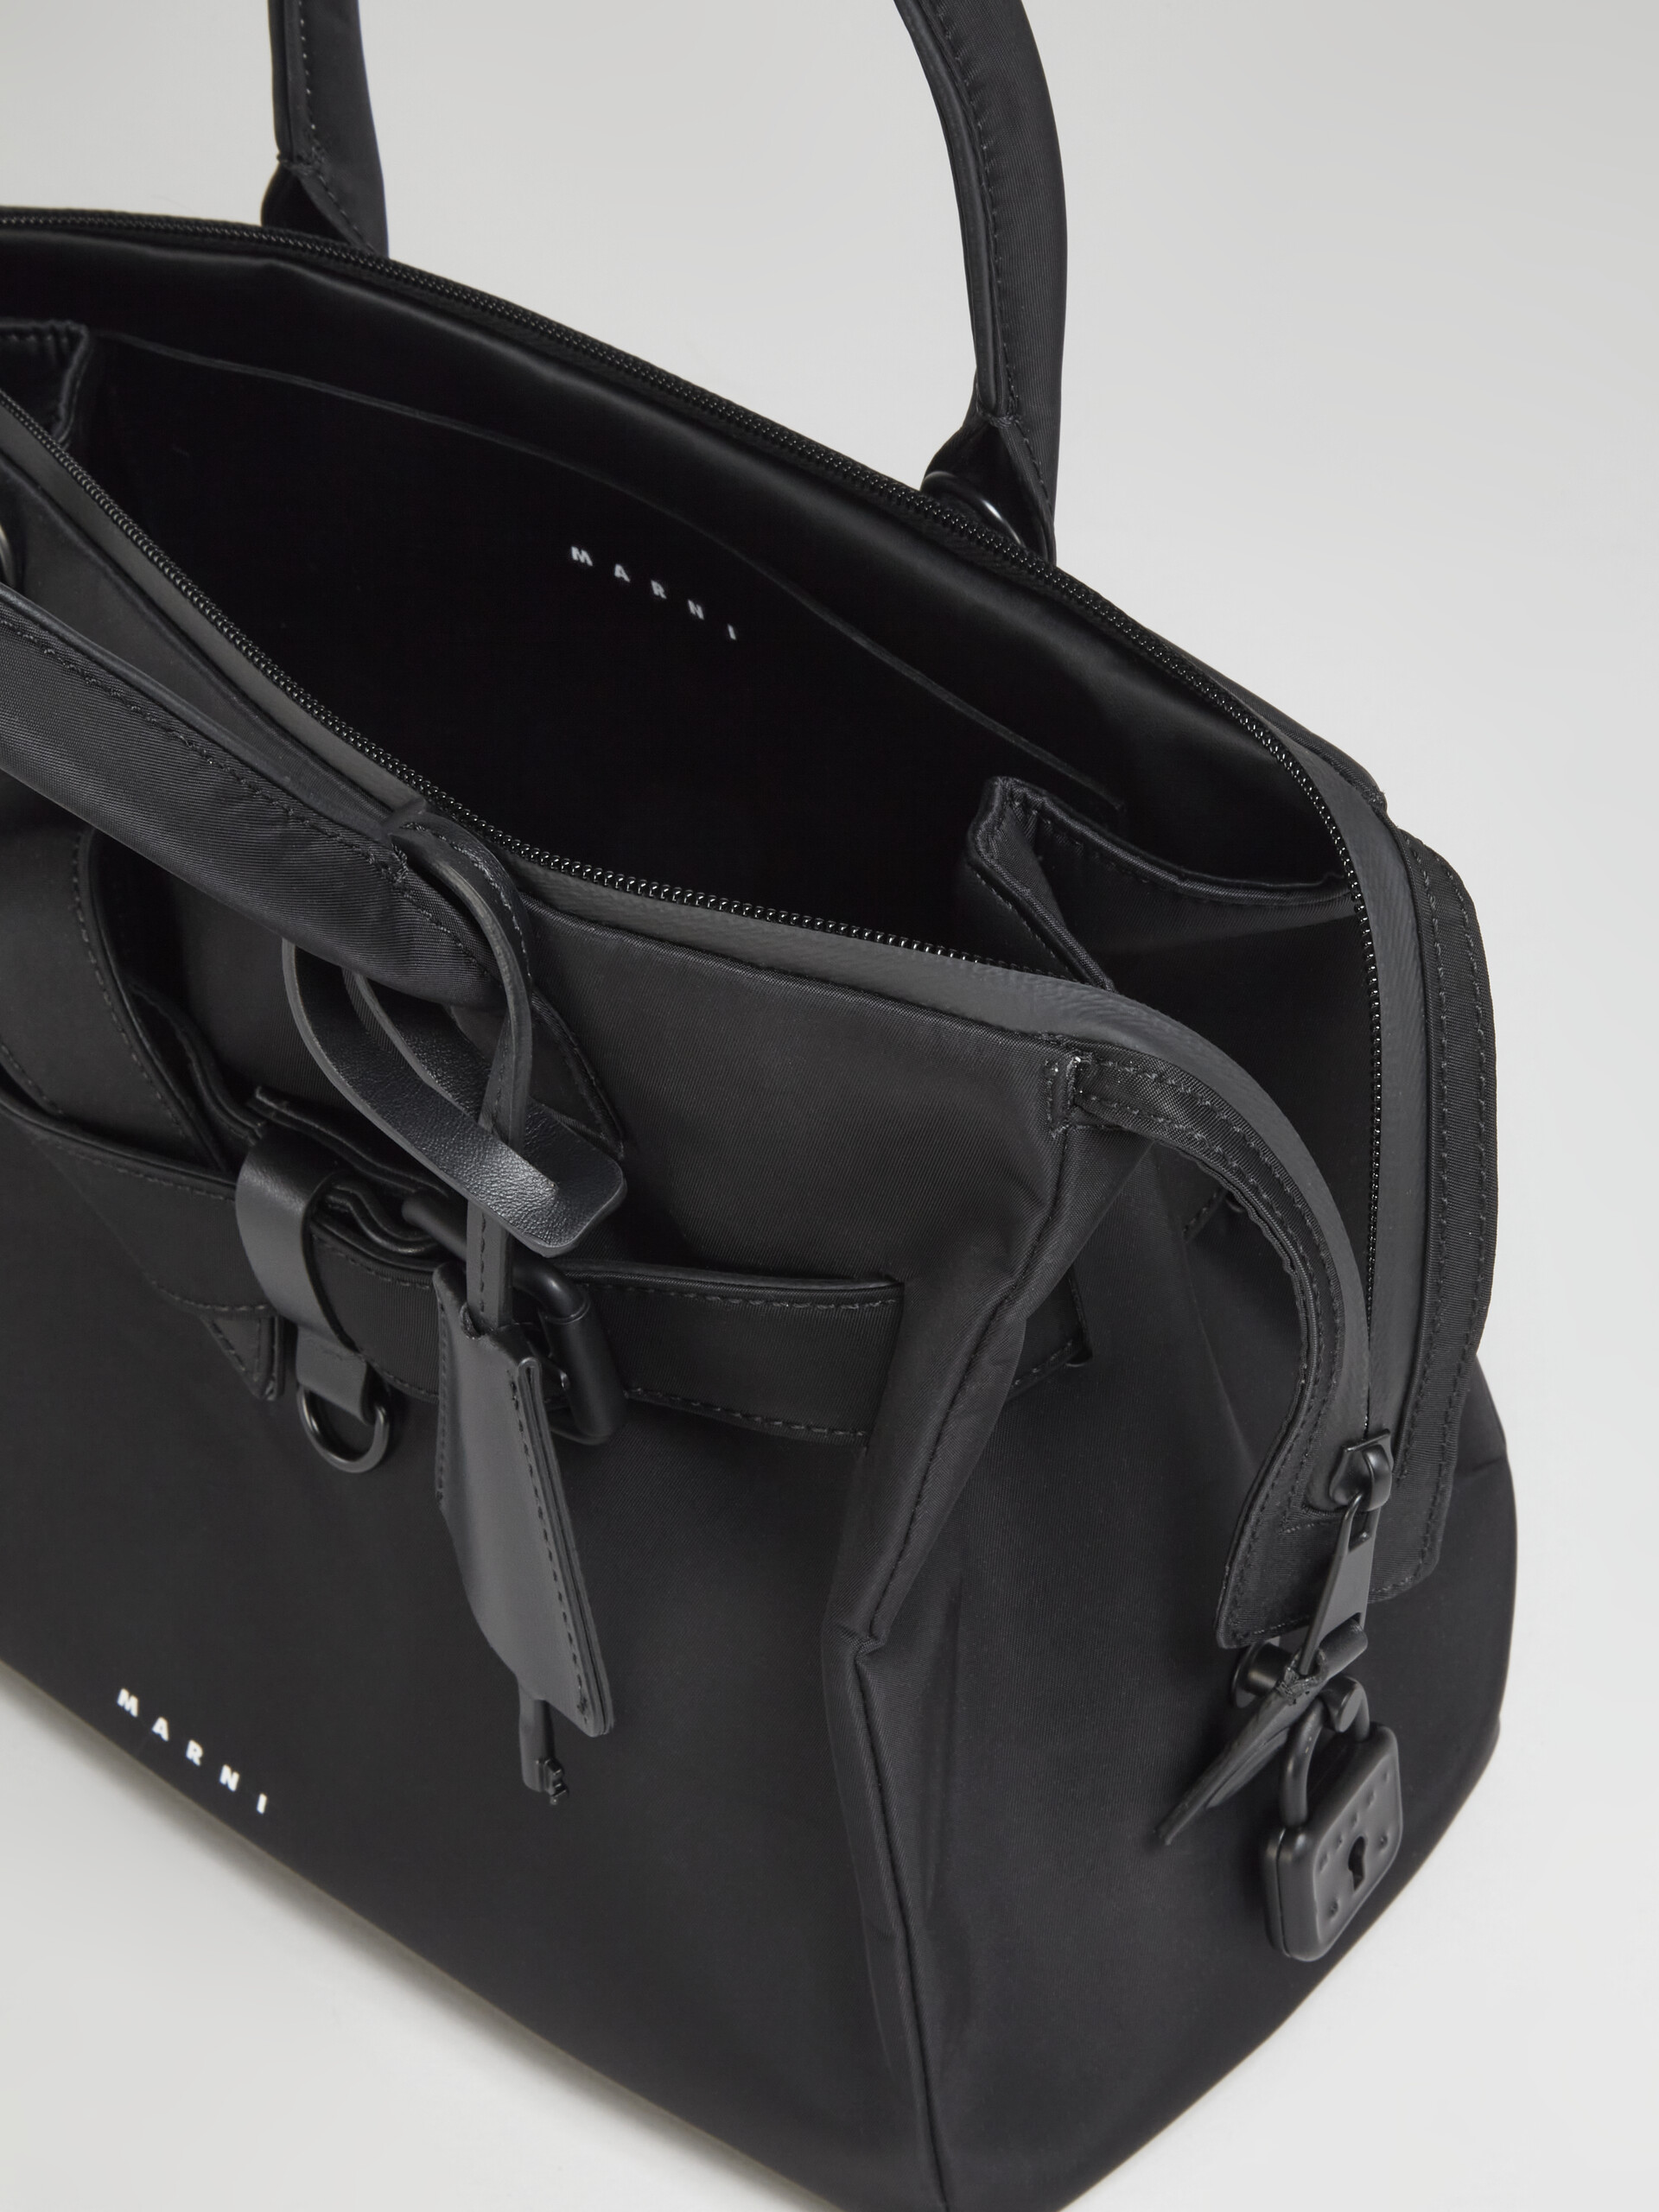 Black nylon TREASURE bag - Handbag - Image 5